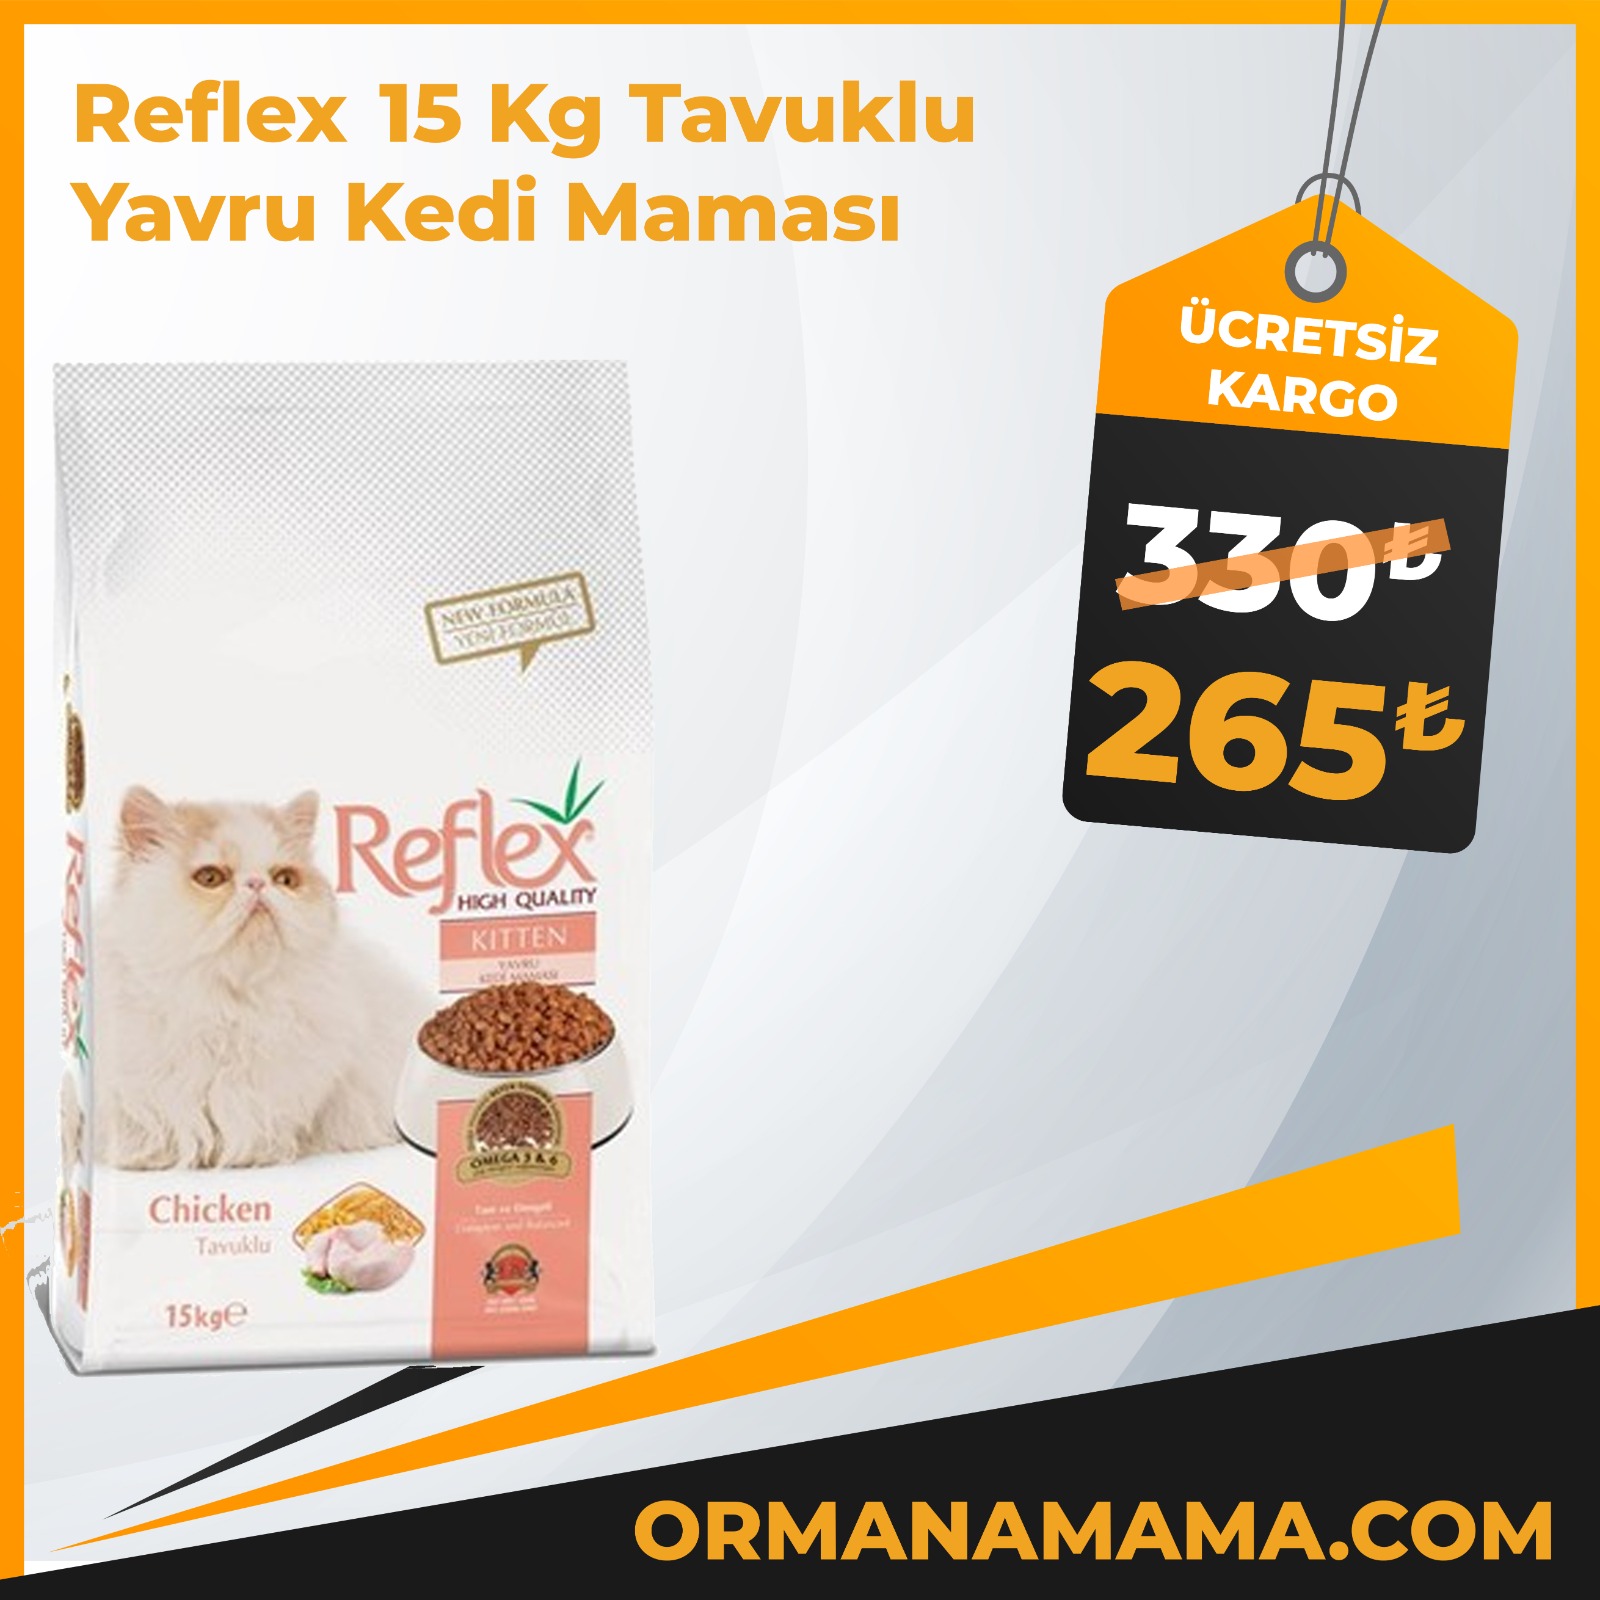 Reflex 15 Kg Tavuklu Yavru Kedi Maması